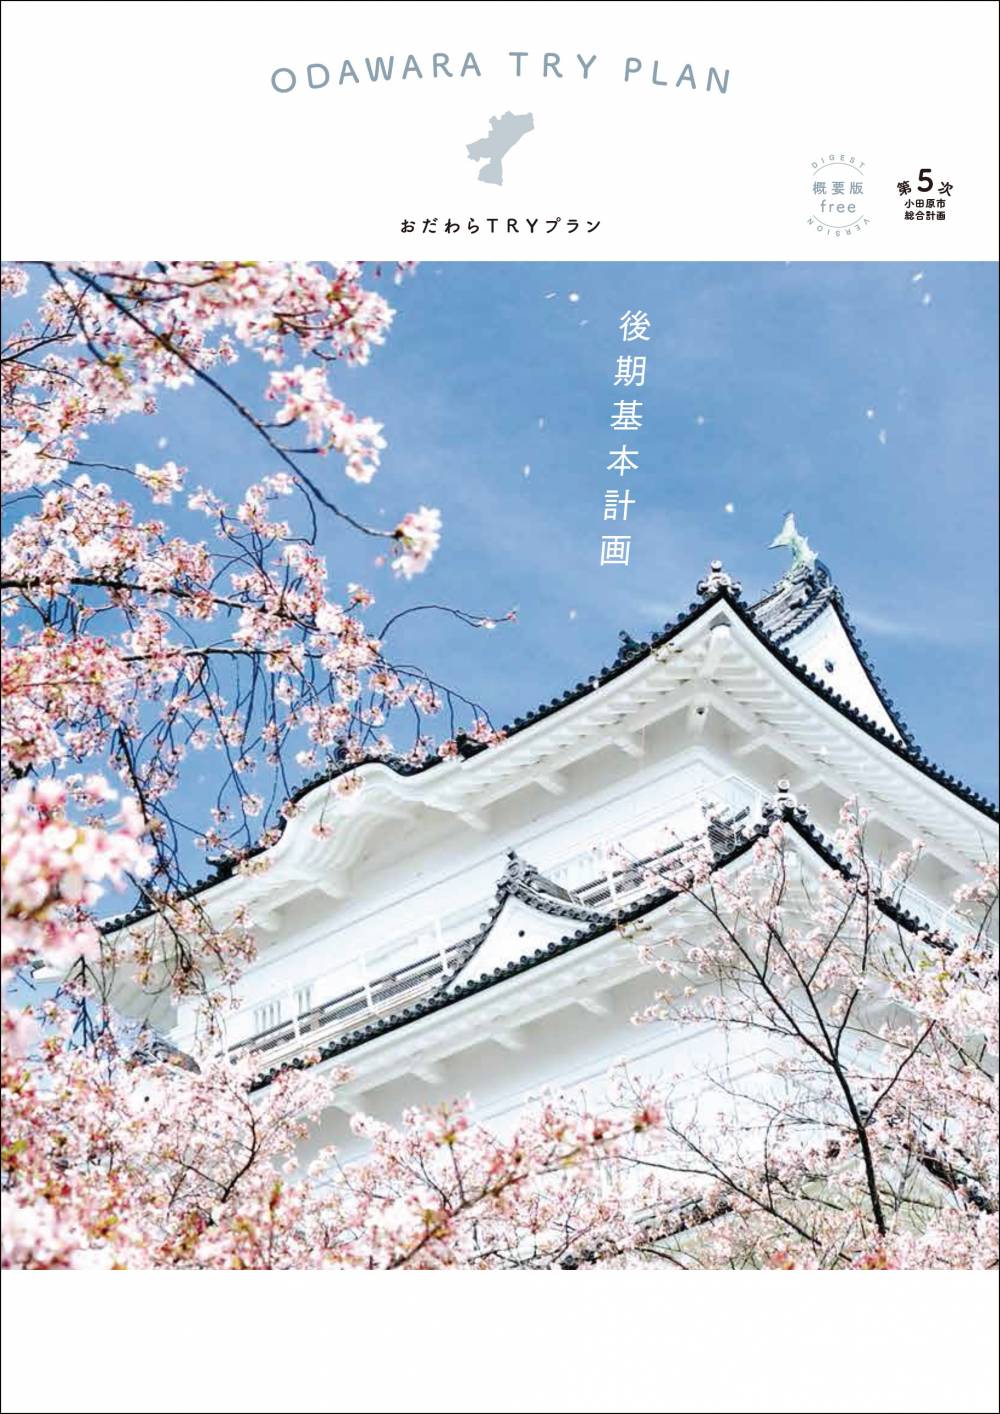 おだわらTRYプランの概要編の表紙。桜と小田原城が写る。